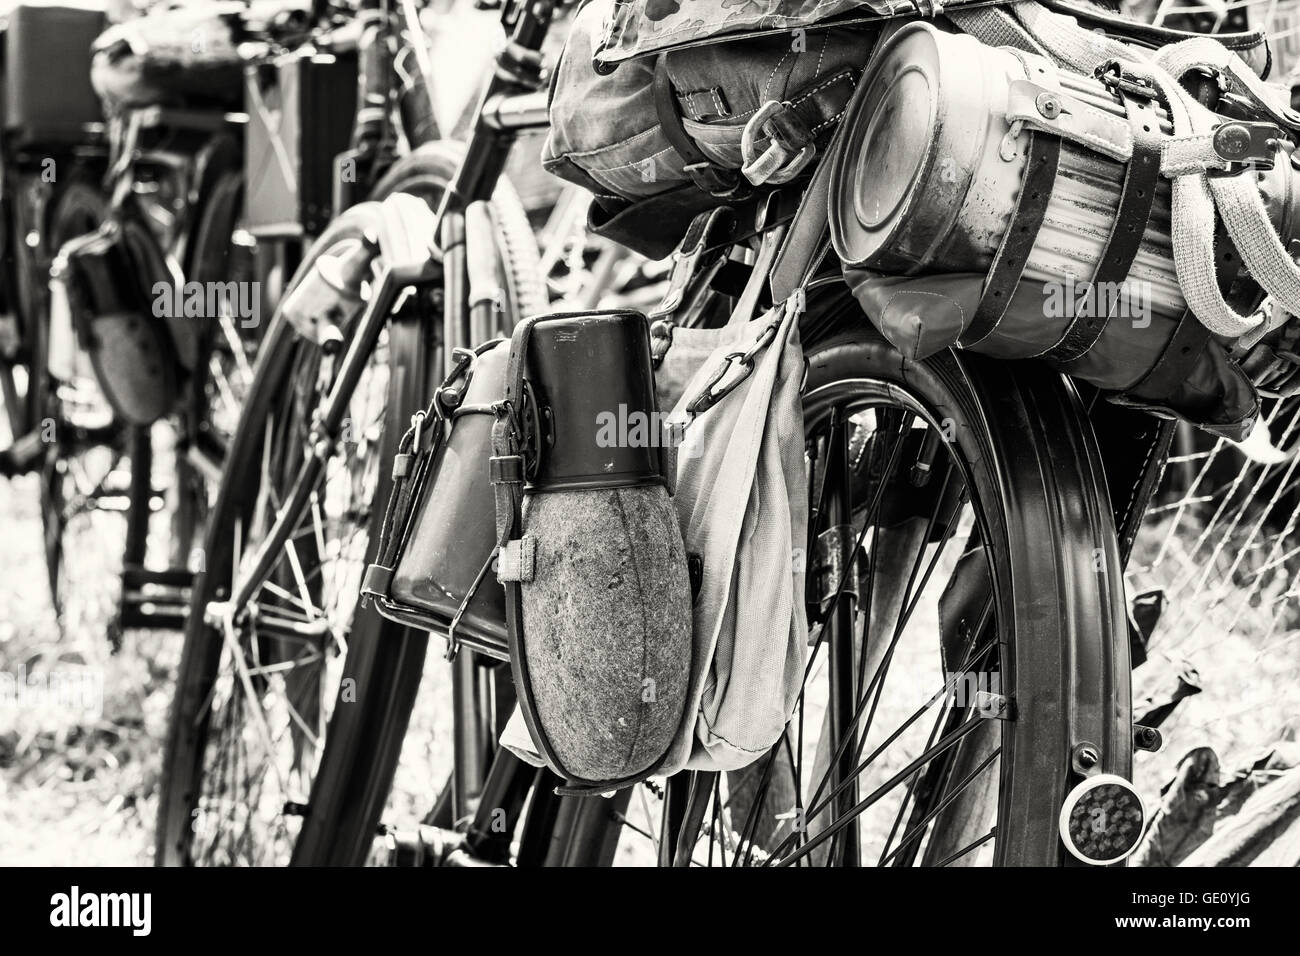 Alte militärische Fahrrad mit kramt und Ausrüstungen. Rucksack und Behälter für Speisen und Getränke. Vintage-Szene. Schwarz und weiß. Stockfoto